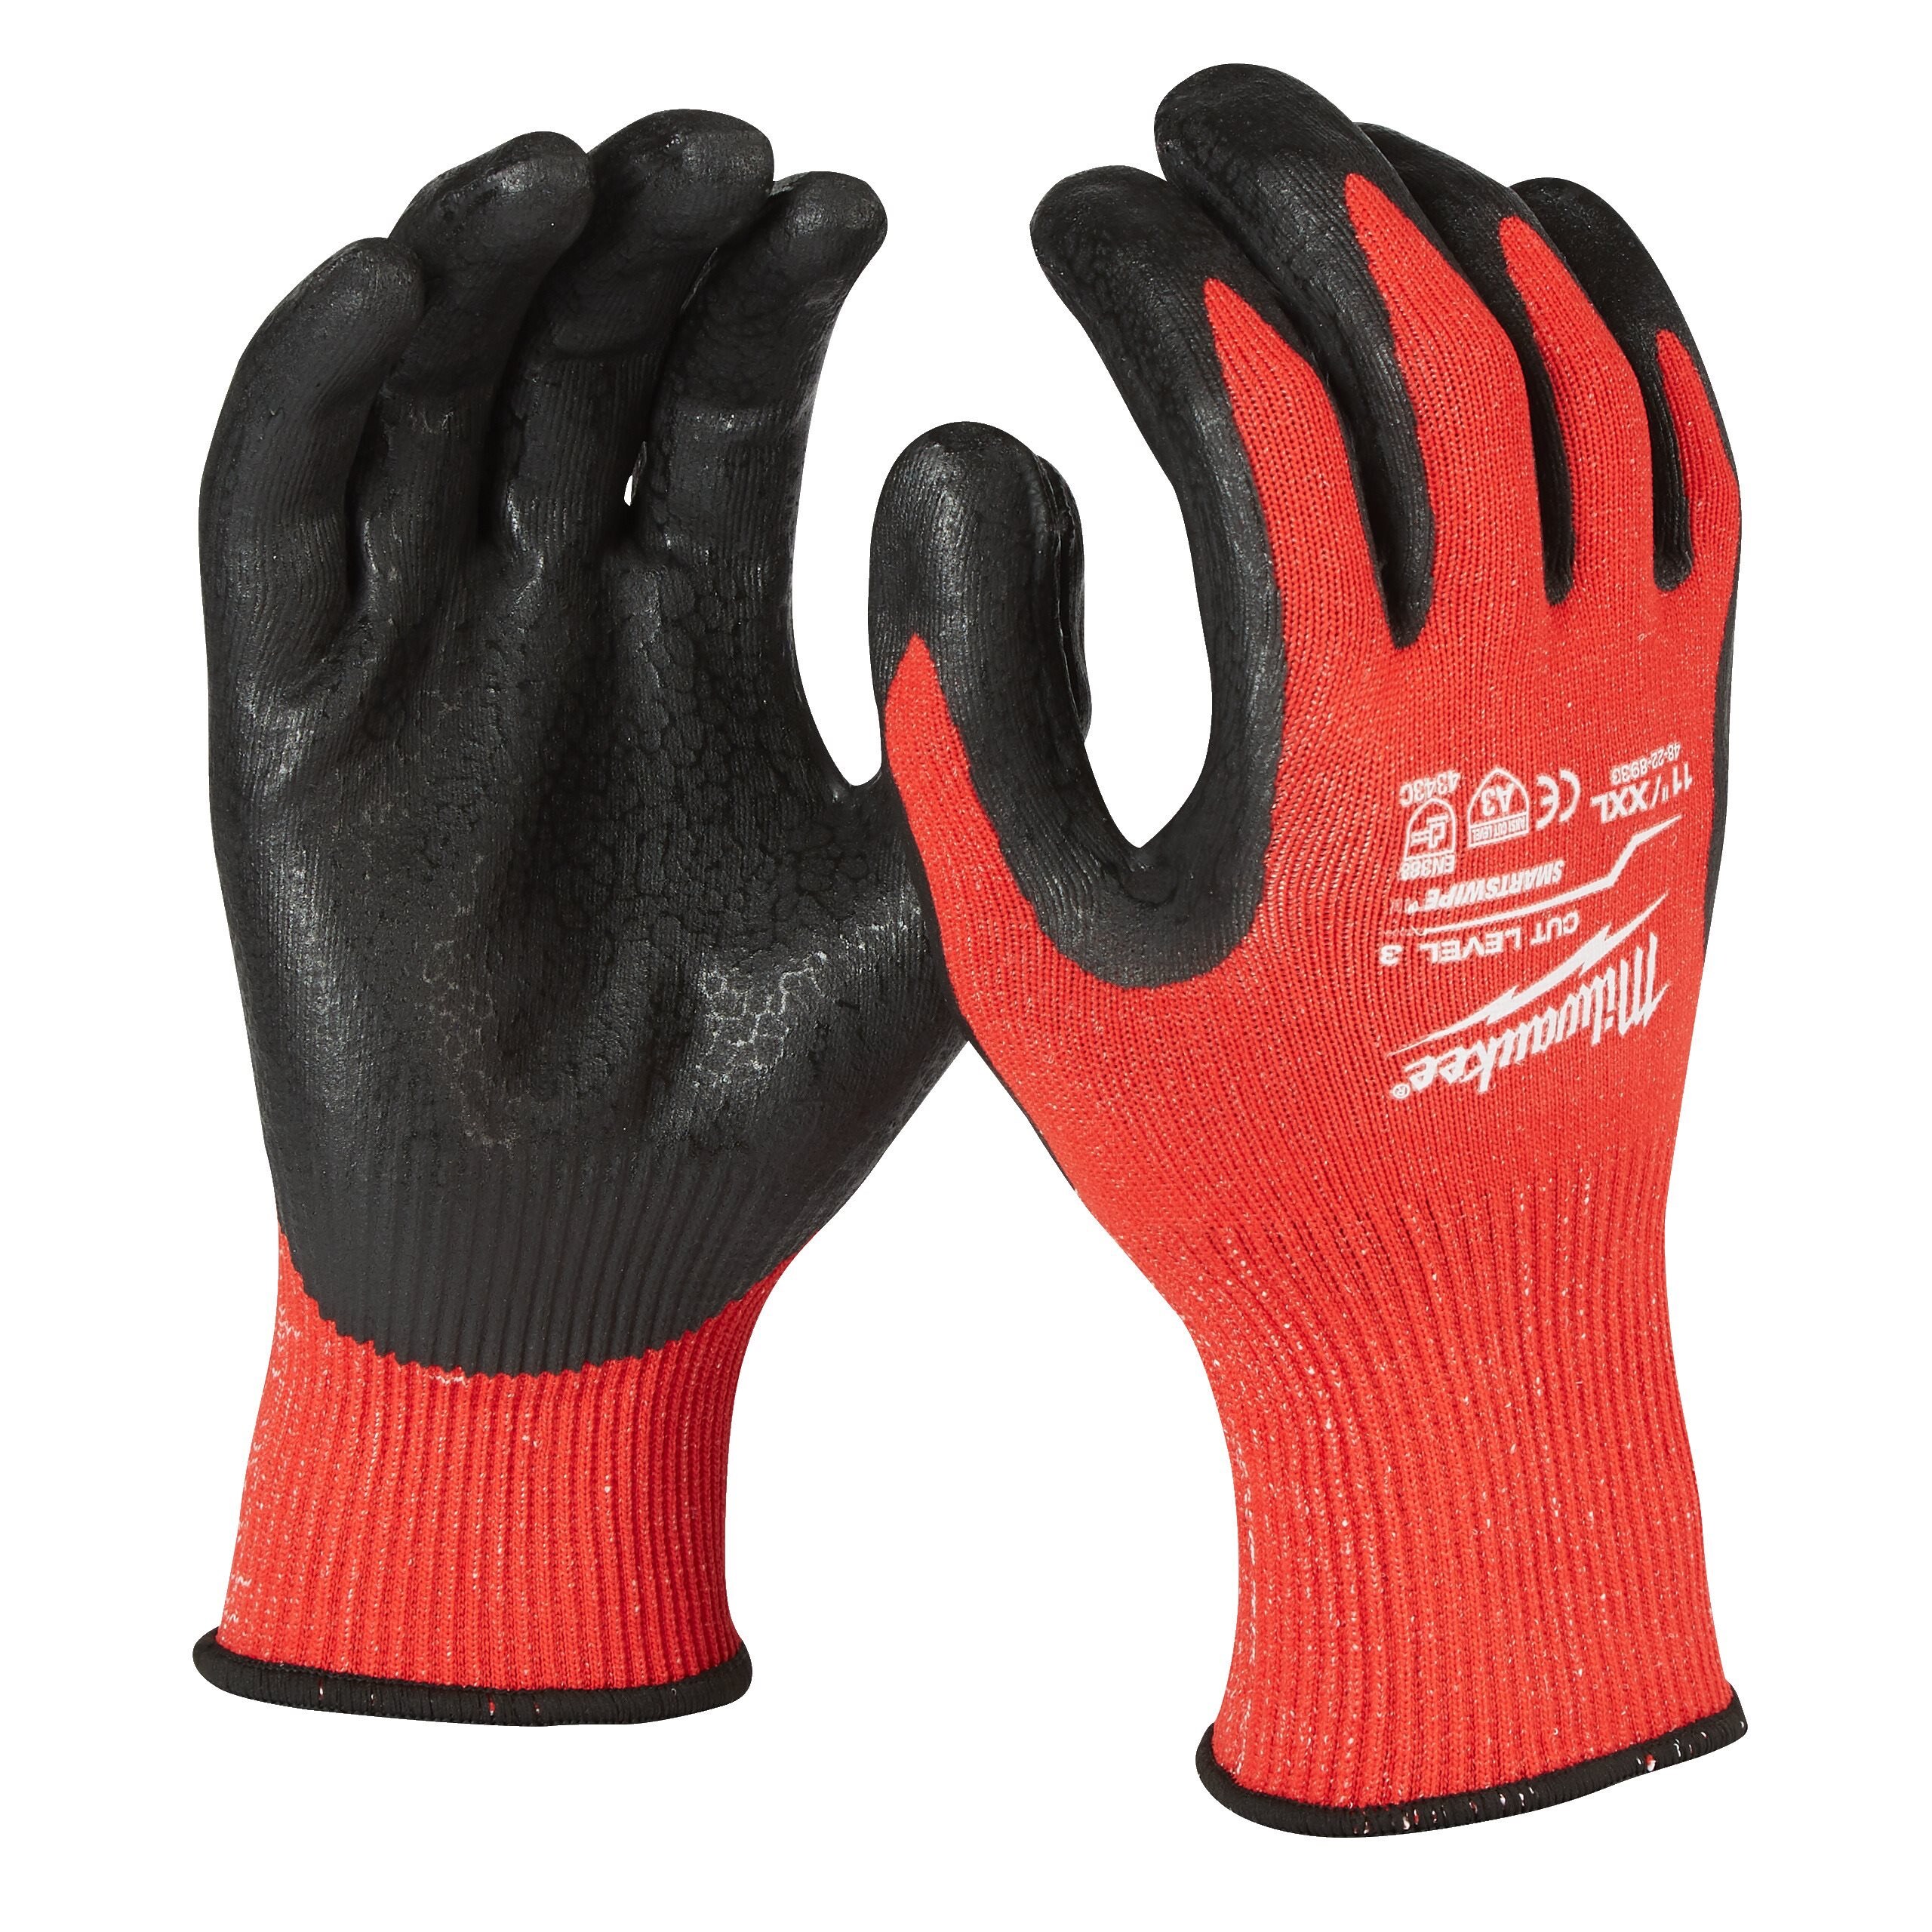 Перчатки защитные Milwaukee Cut Level 3/C, размер XXL/11, 4932471423 защитные утепленные перчатки oregon